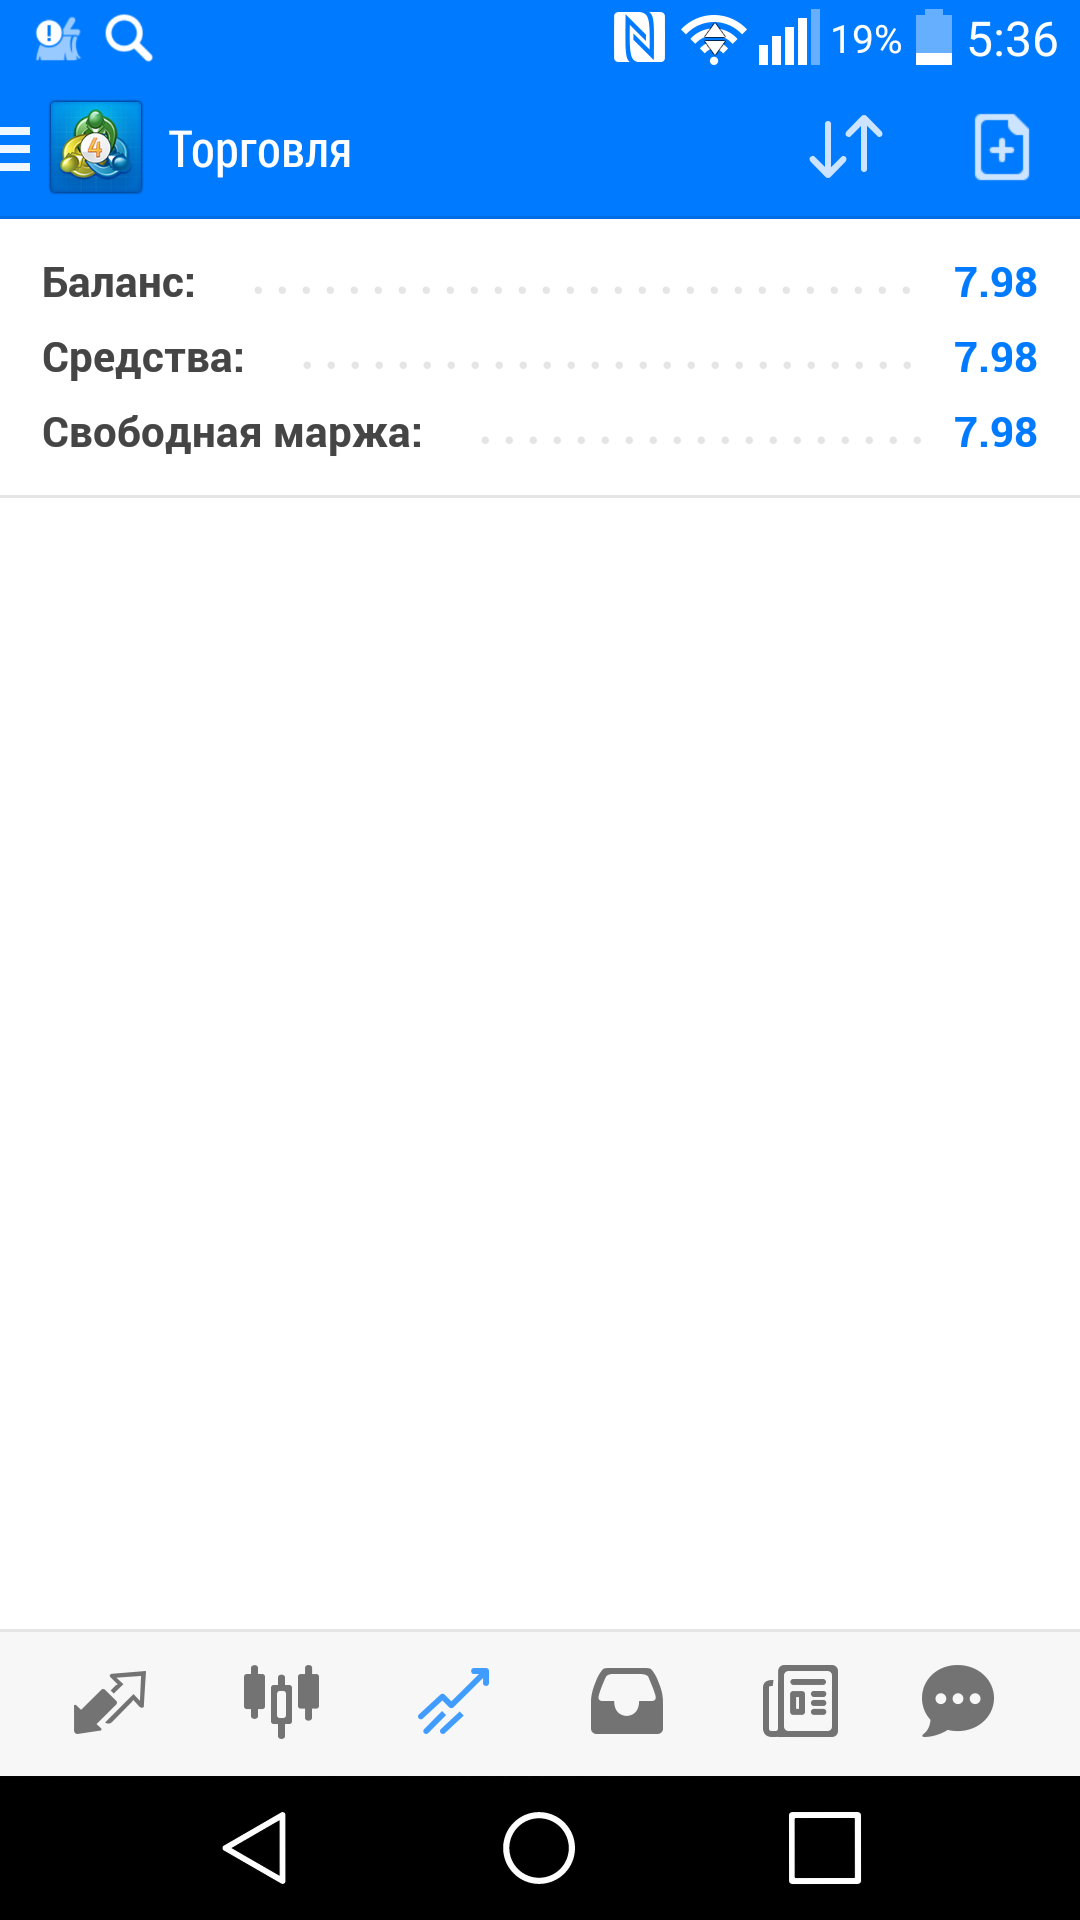 Саяногорск Инфо - screenshot_2019-04-25-05-36-47.png, Скачано: 156